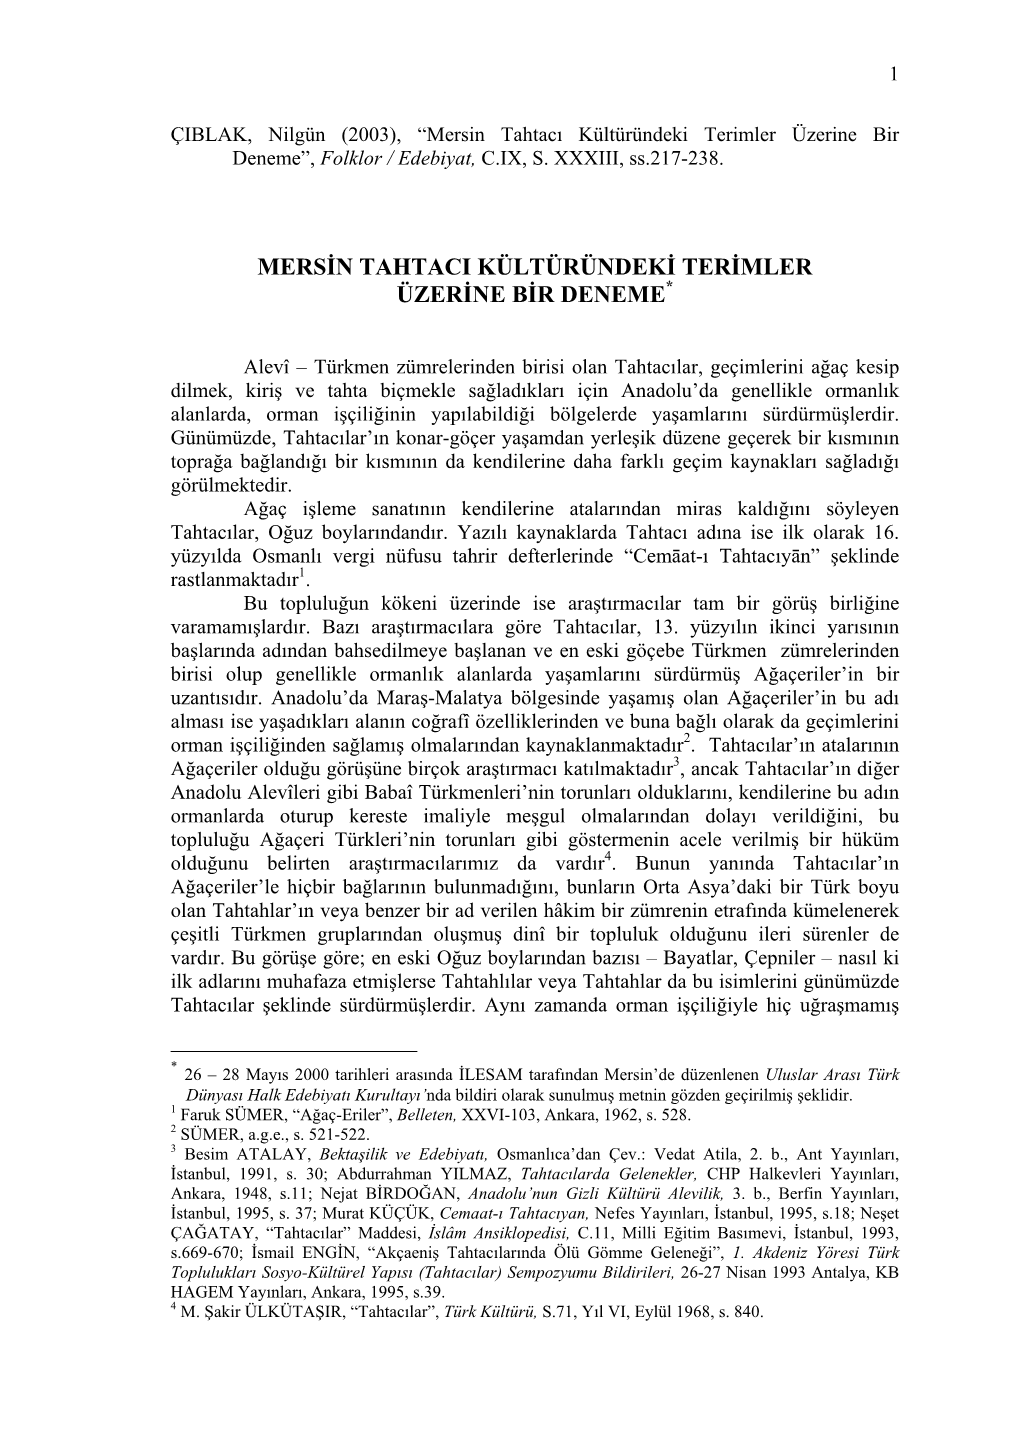 Mersin Tahtacı Kültüründeki Terimler Üzerine Bir Deneme”, Folklor / Edebiyat, C.IX, S